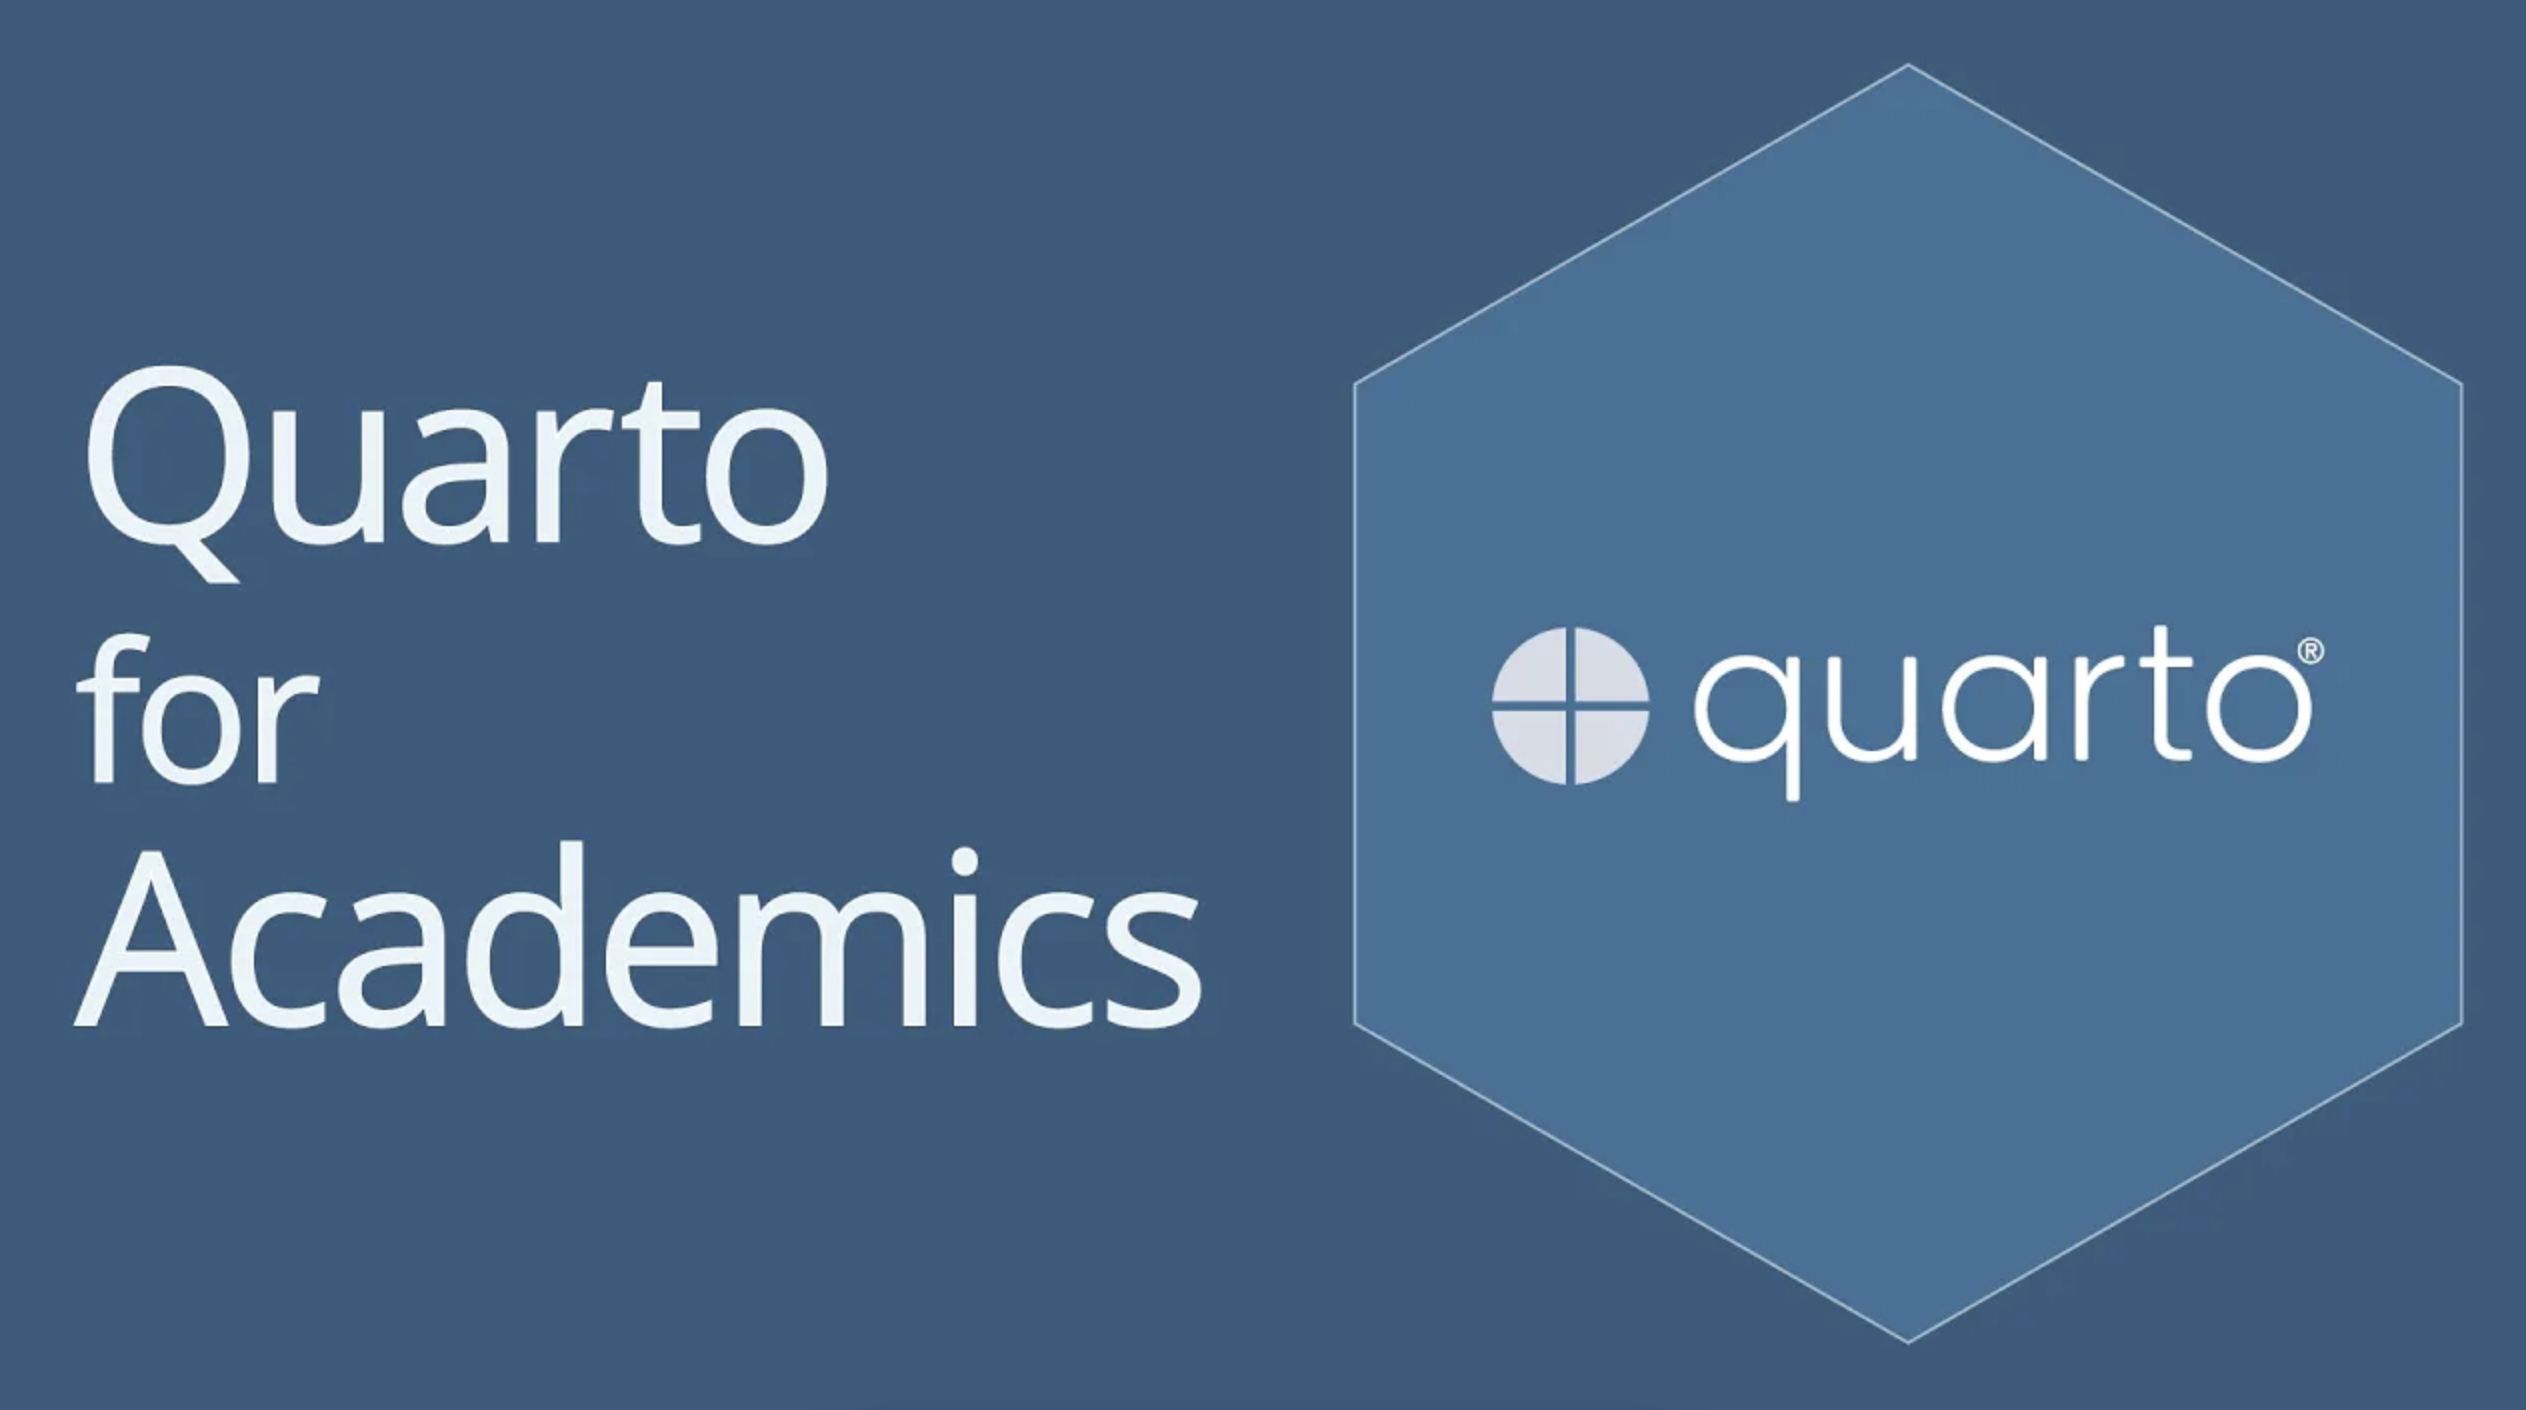 Logotipo de Quarto sobre fondo azul y título del vídeo - Quarto para académicos